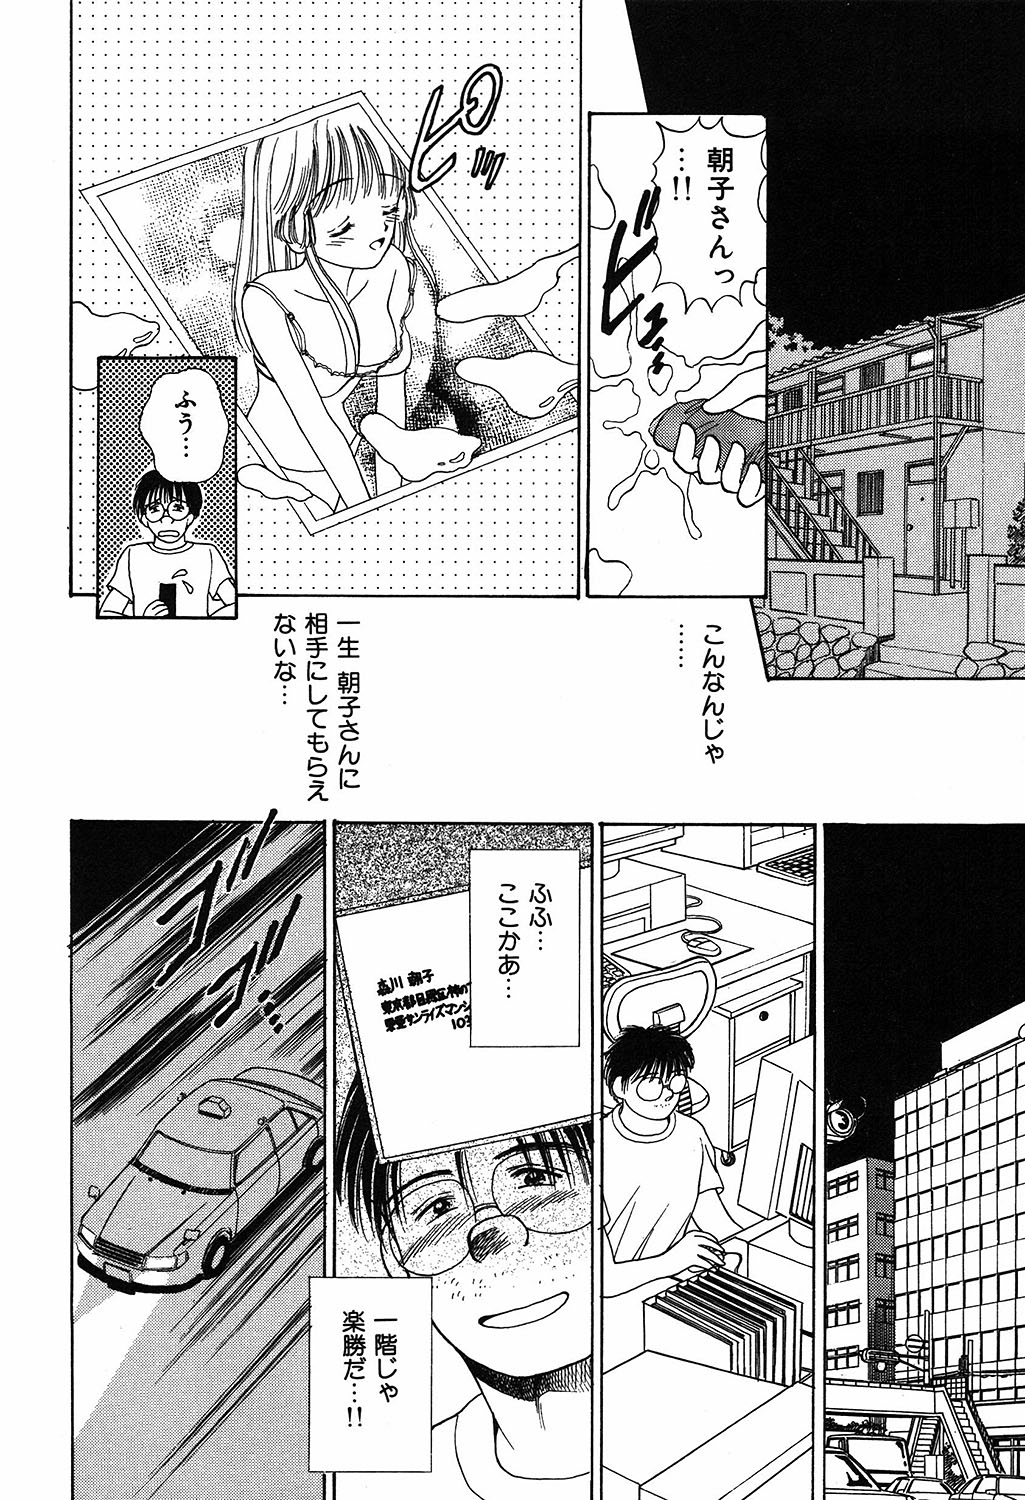 [Ayumi] Daisuki page 26 full